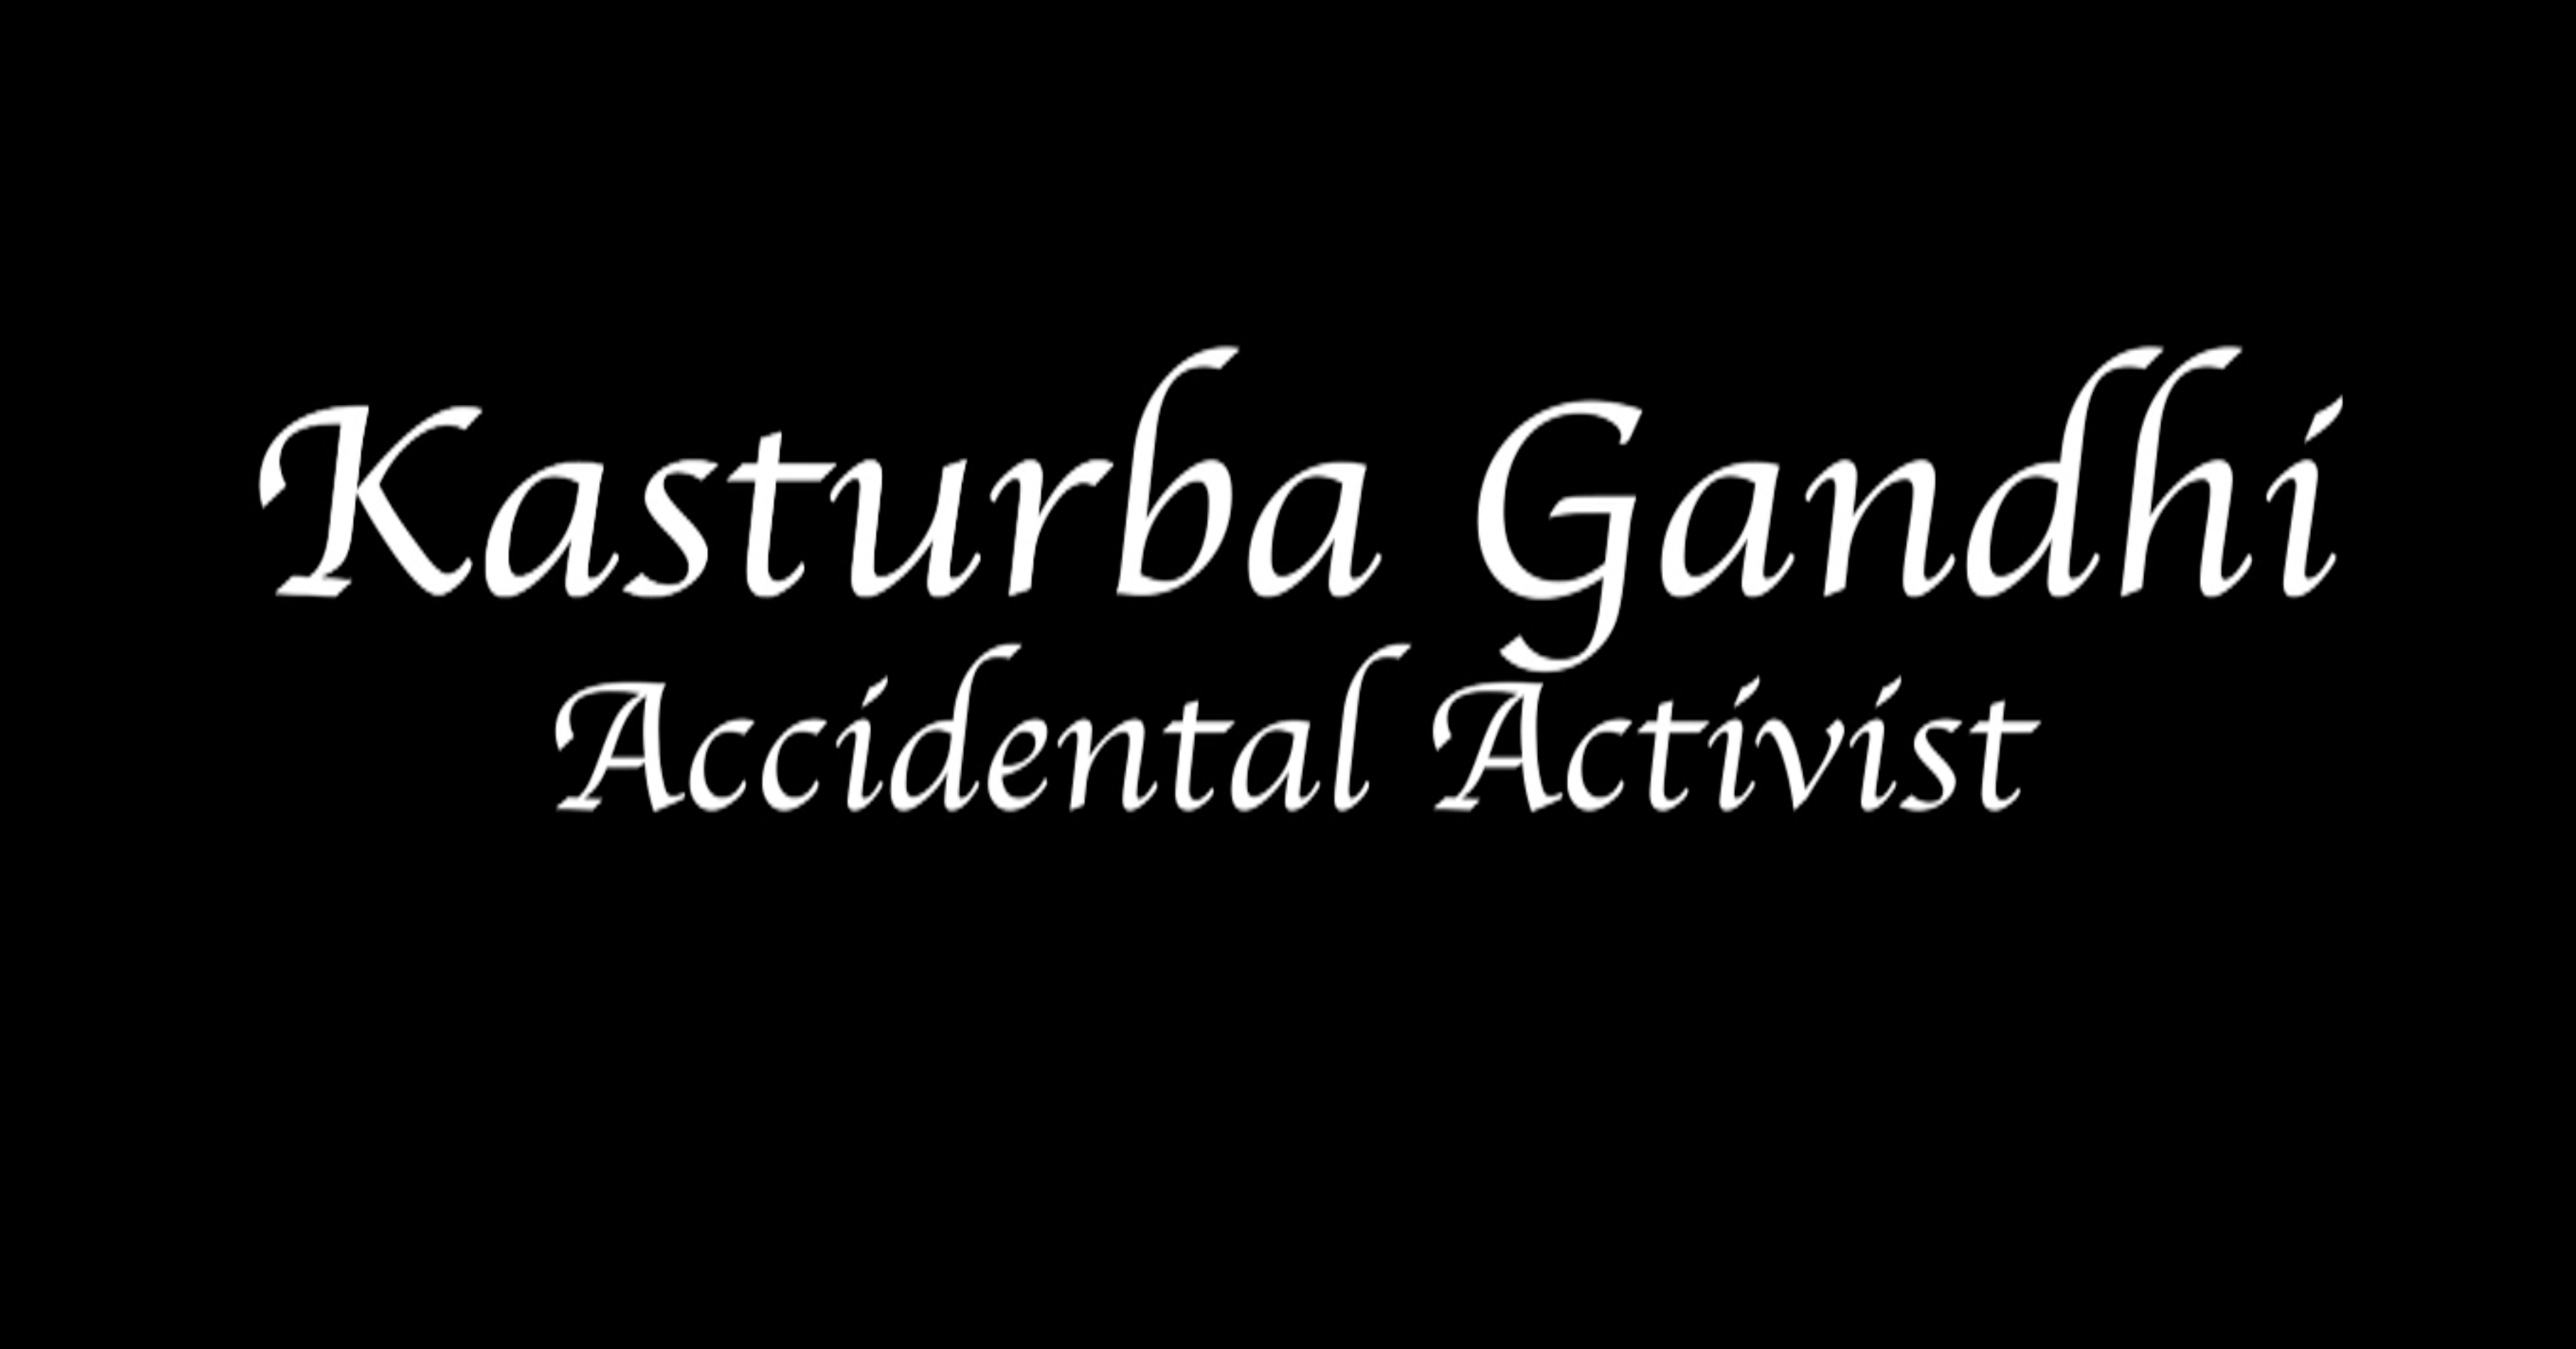 KASTURBA GANDHI: ACCIDENTAL ACTIVIST